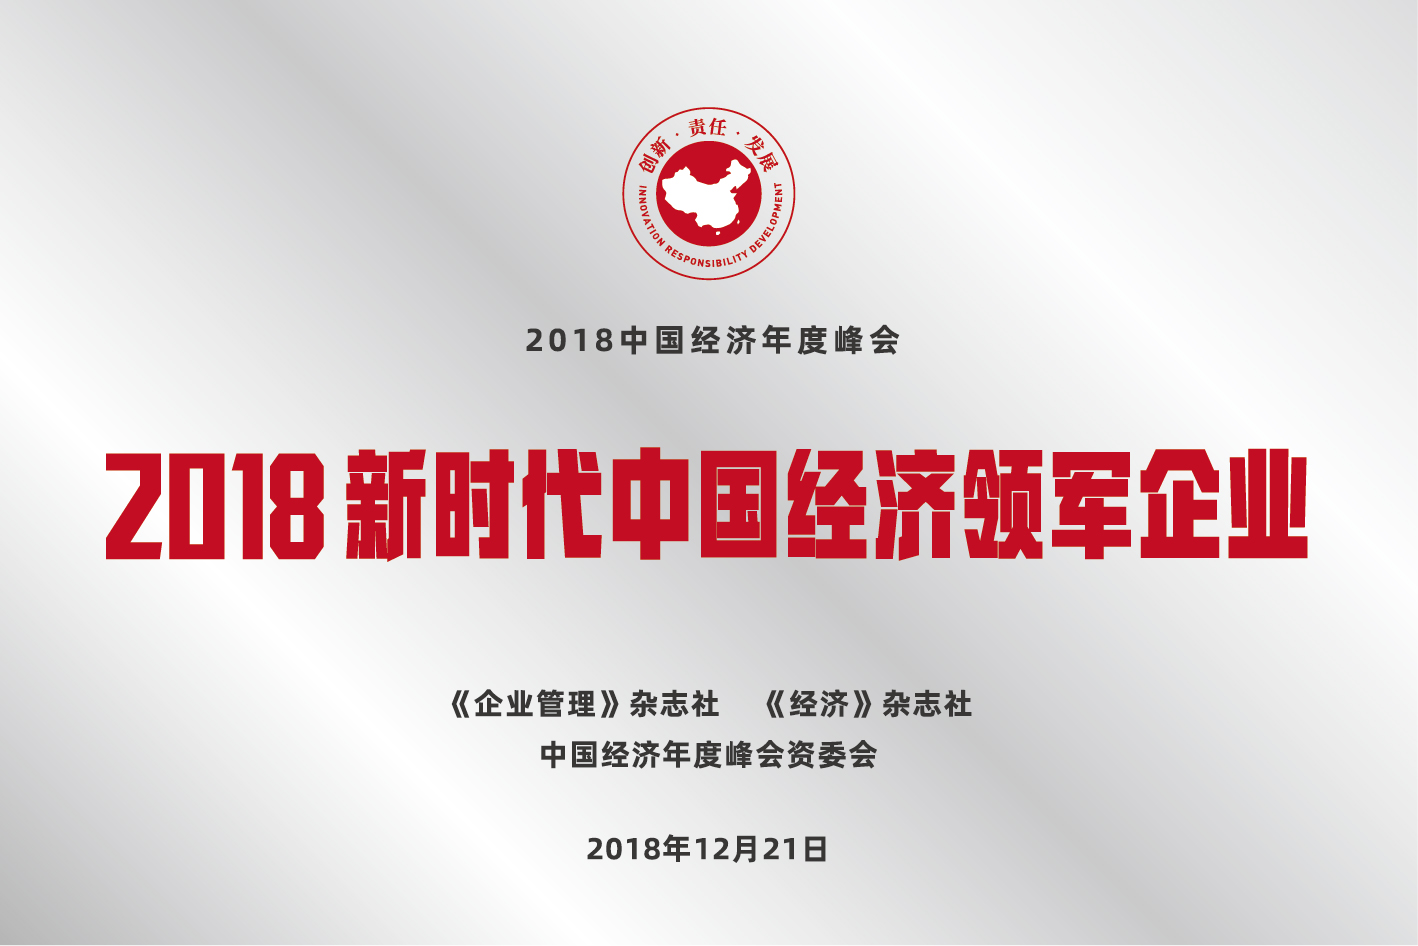 2018年12月，被《经济日报》评为“新时代中国经济领军企业”